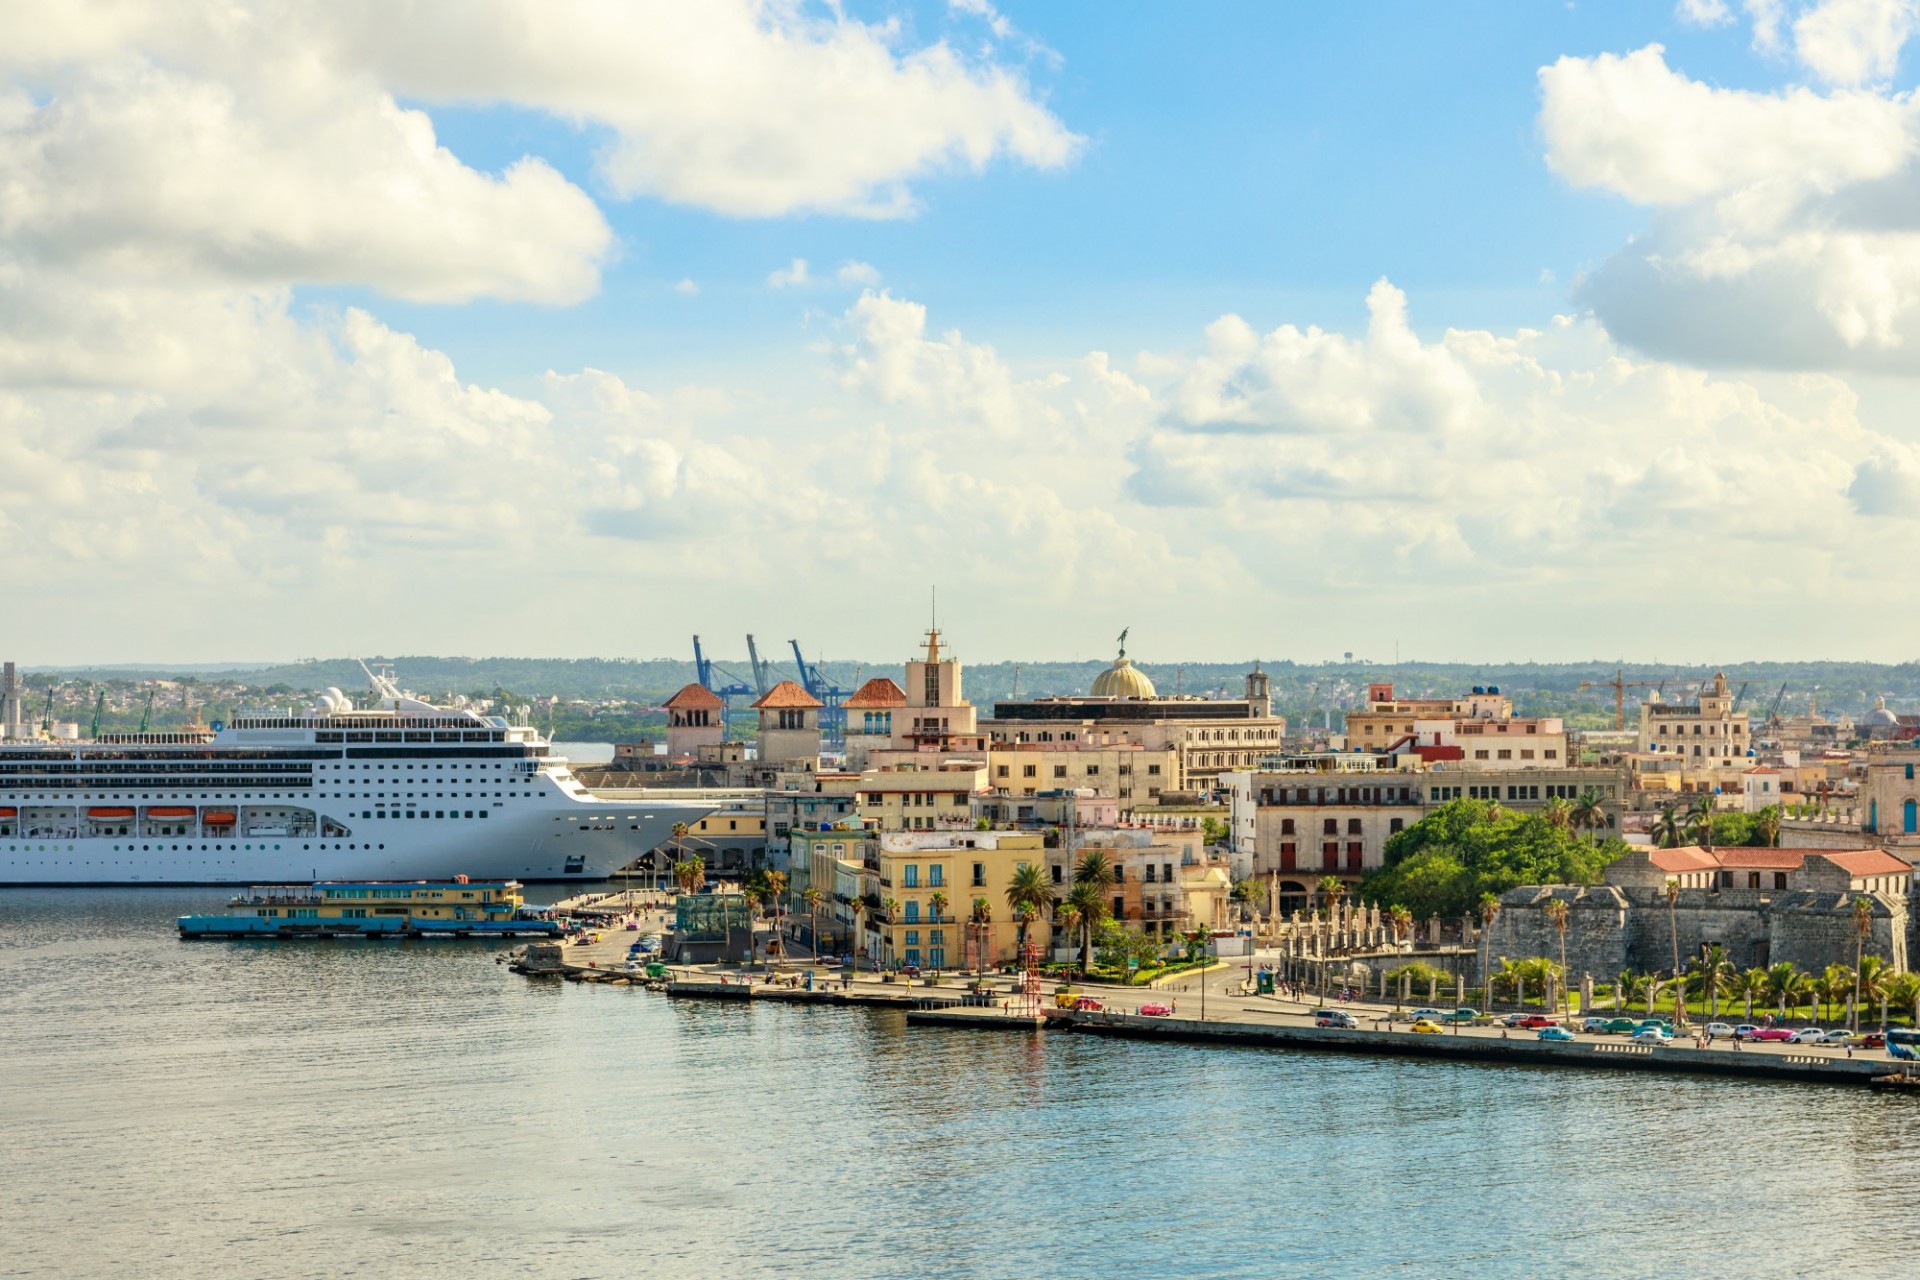 Crucero atracando en La Habana, Cuba debajo de cielo azul y nubes blancas